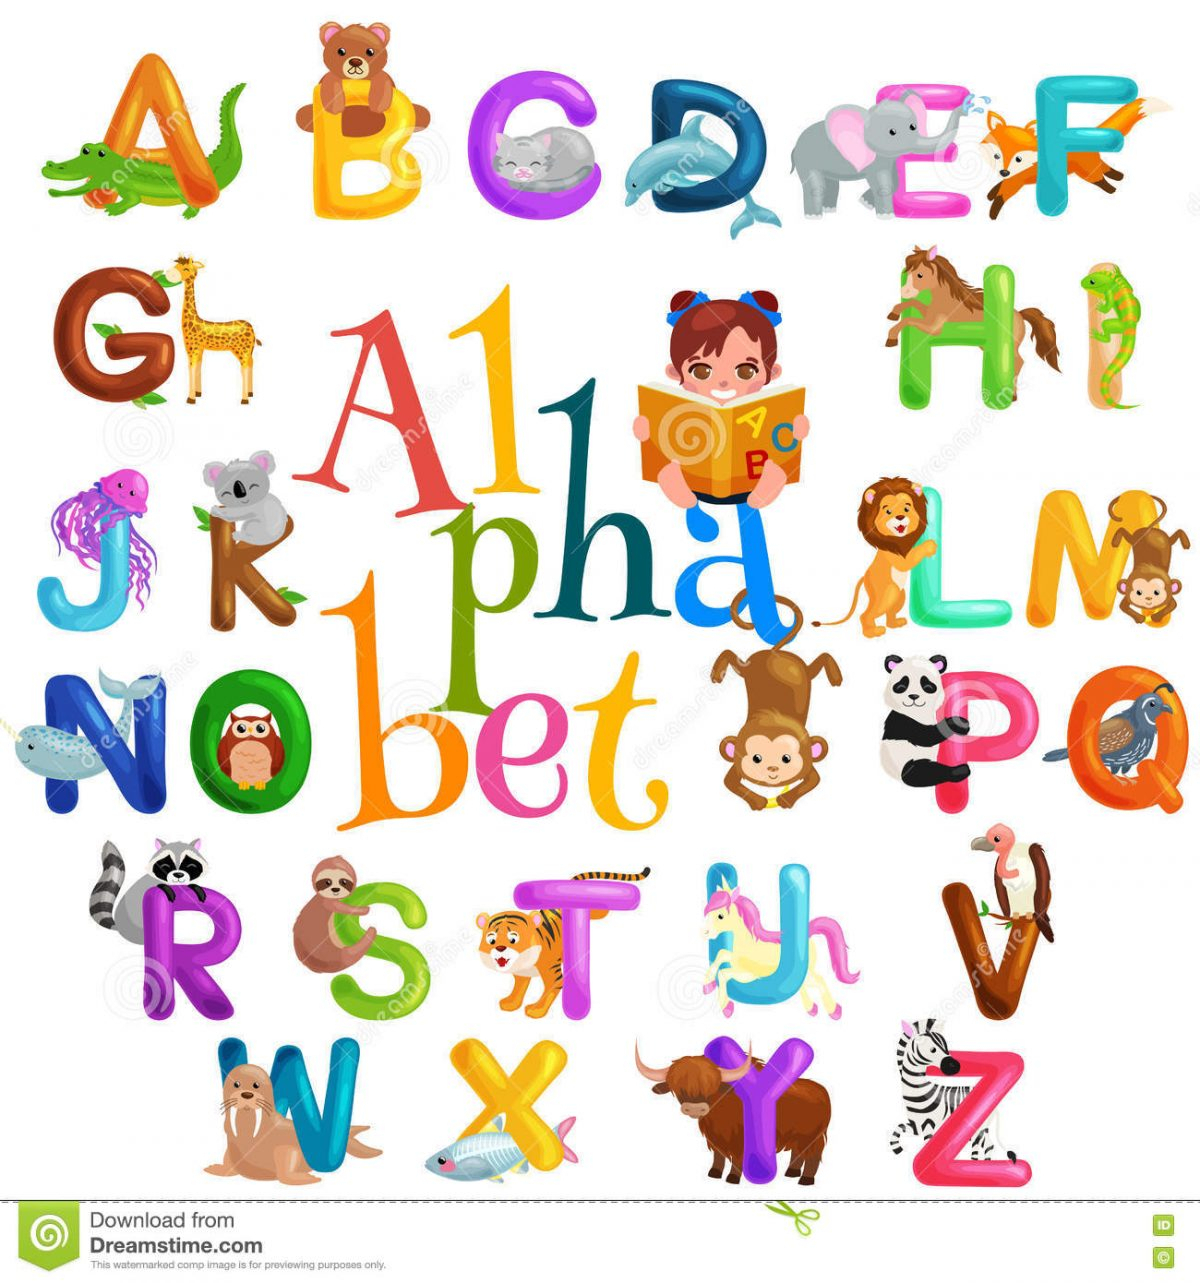 J Apprend L Alphabet Maternelle - Primanyc pour J Apprend L Alphabet Maternelle